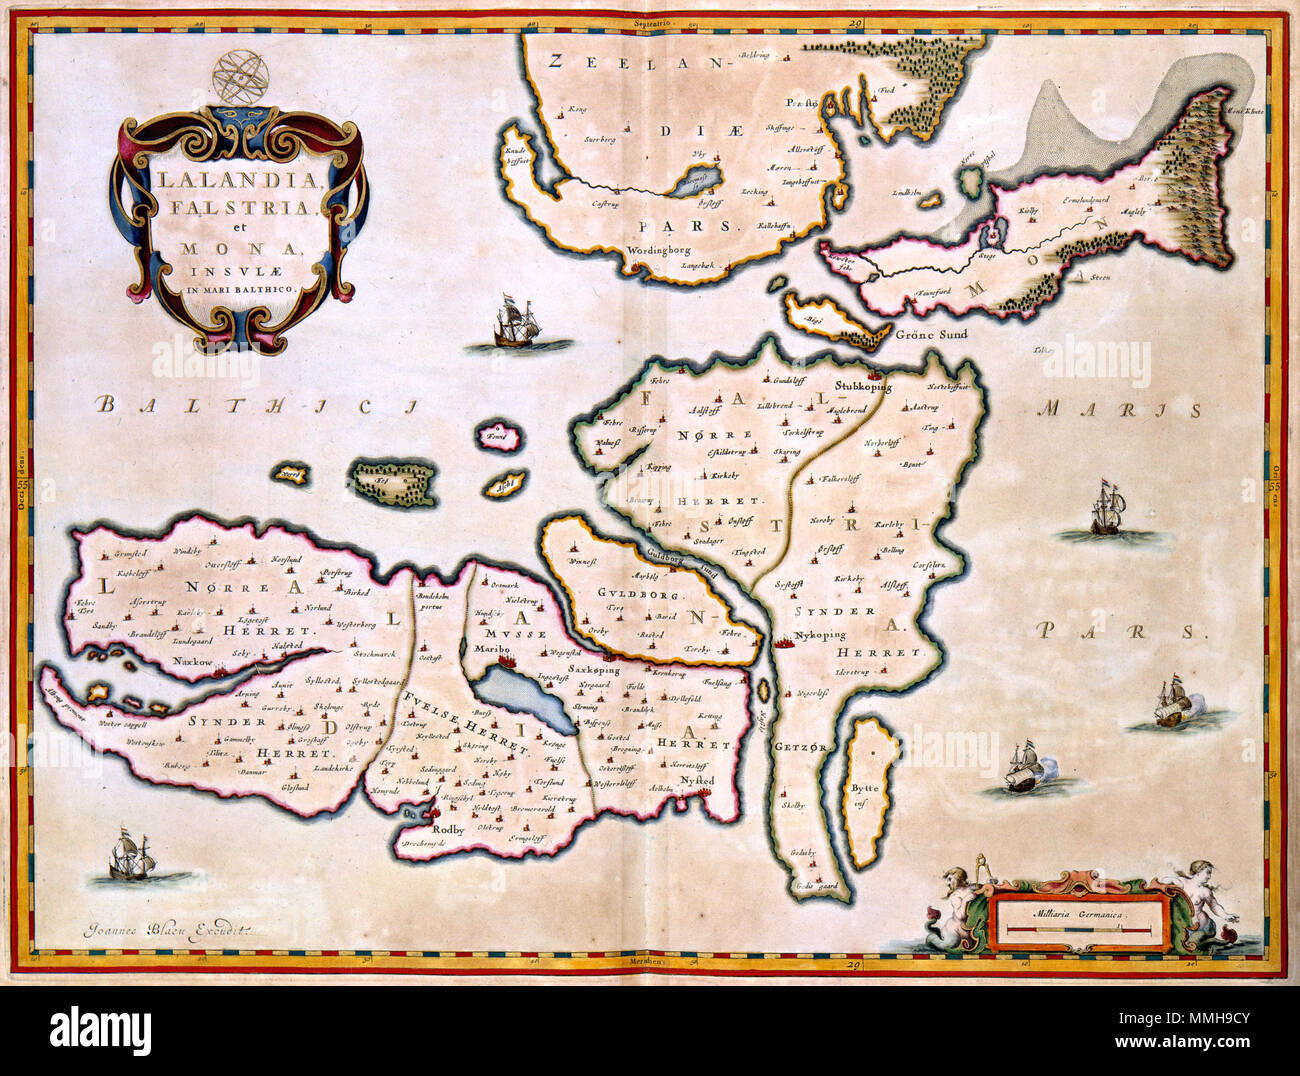 .  Nederlands: Deze kaart van de Deense eilanden Lolland, Falster en Mon werd in 1662 gepubliceerd in de Atlas Maior van Joan Blaeu (1598-1673). De kaart geeft een voor die tijd zeer betrouwbaar beeld van deze eilanden. Voor de samenstelling van de kaart maakte Blaeu namelijk gebruik van de resultaten van een grote kartografische opname van het Deense rijk die al vanaf 1630 in opdracht van Koning Christian IV werd uitgevoerd. English: This map of the Danish islands Lolland, Falster and Mon was published in 1662 in the Atlas Maior by Joan Blaeu (1598-1673). The map gives a contemporary view of  Stock Photo